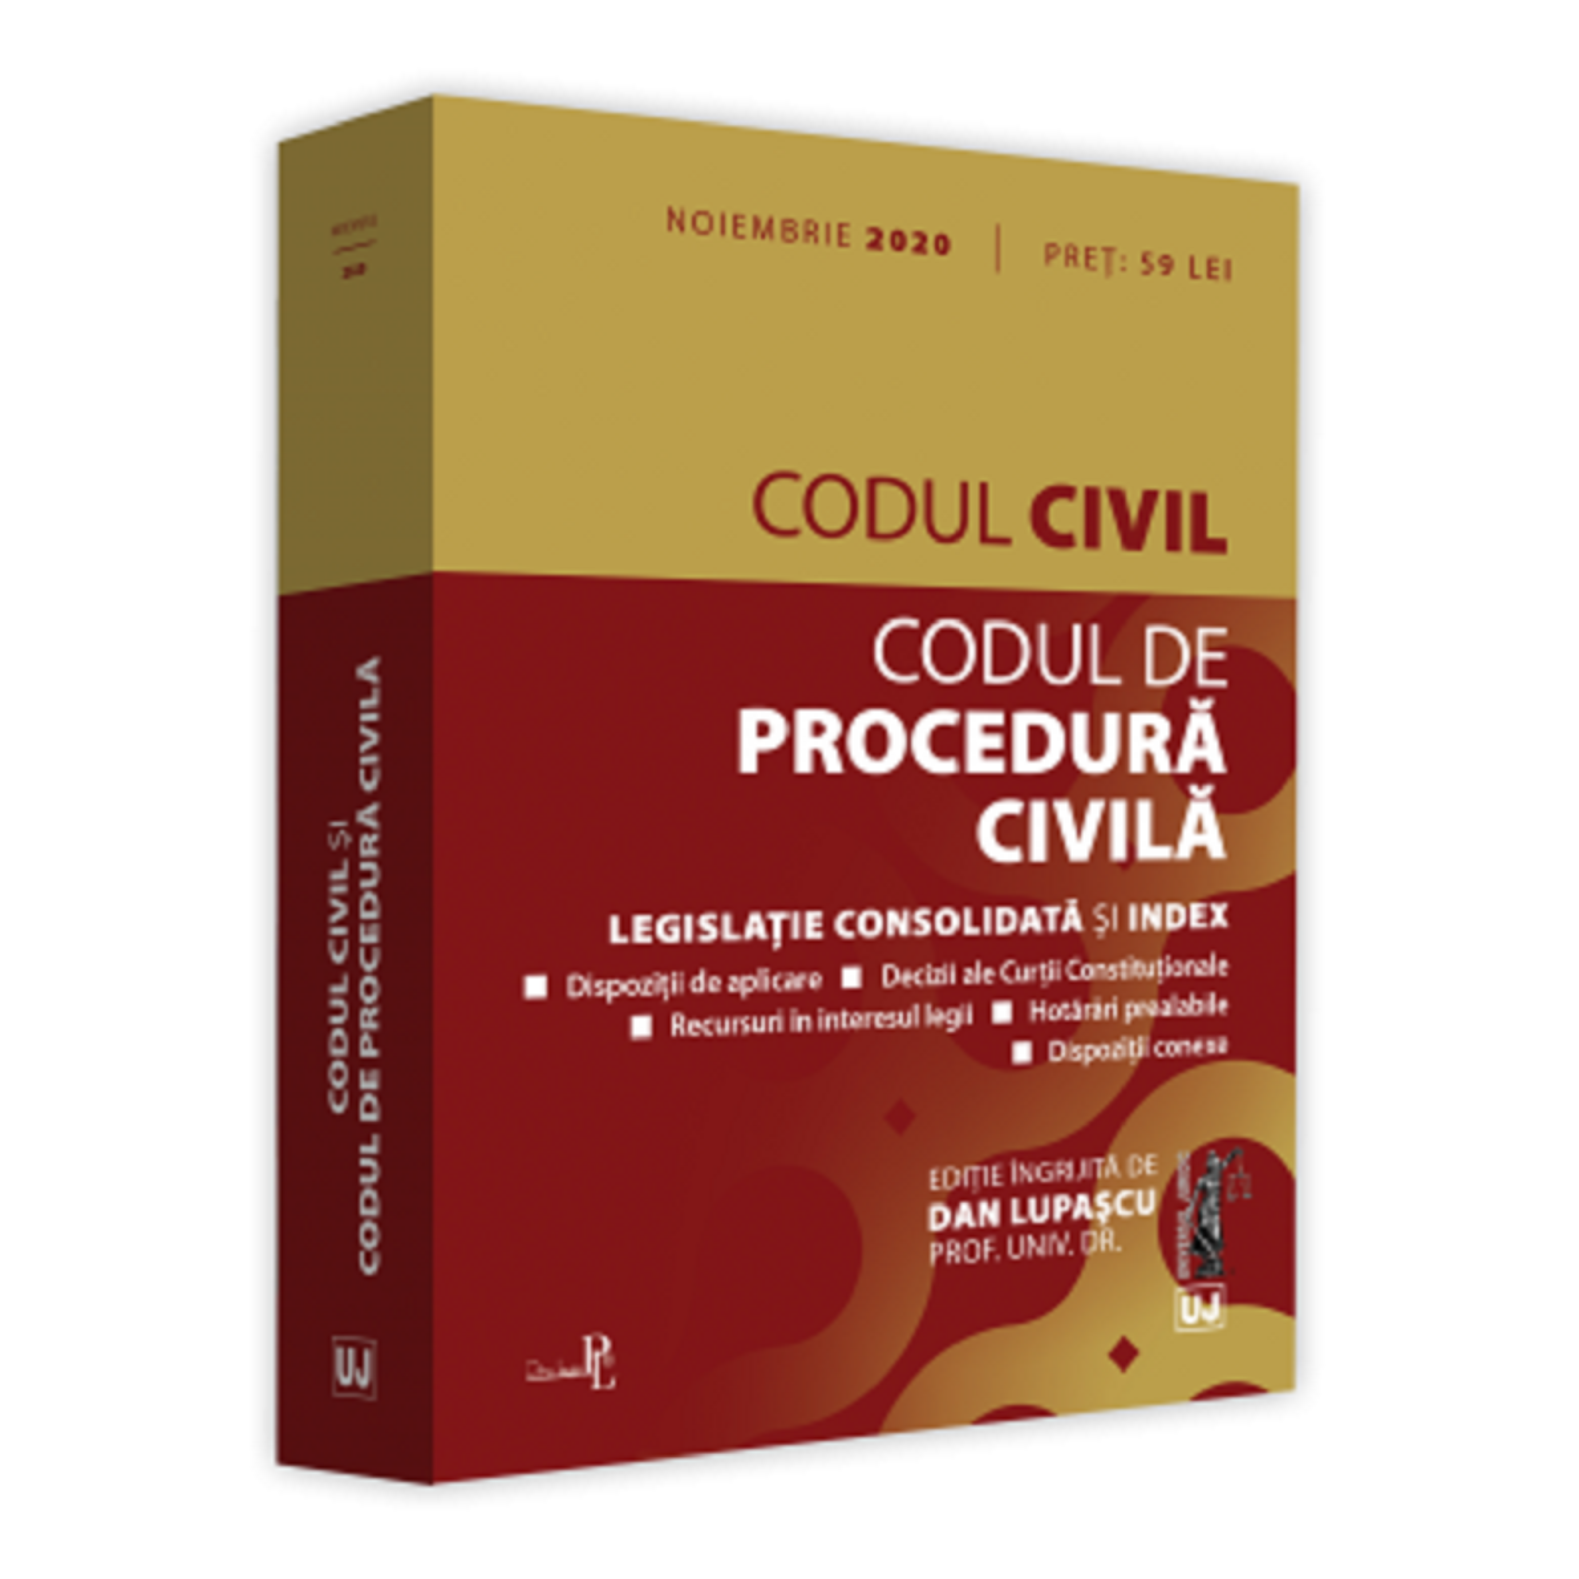 Codul civil si Codul de procedura civila: noiembrie 2020 | Dan Lupascu carturesti.ro imagine 2022 cartile.ro